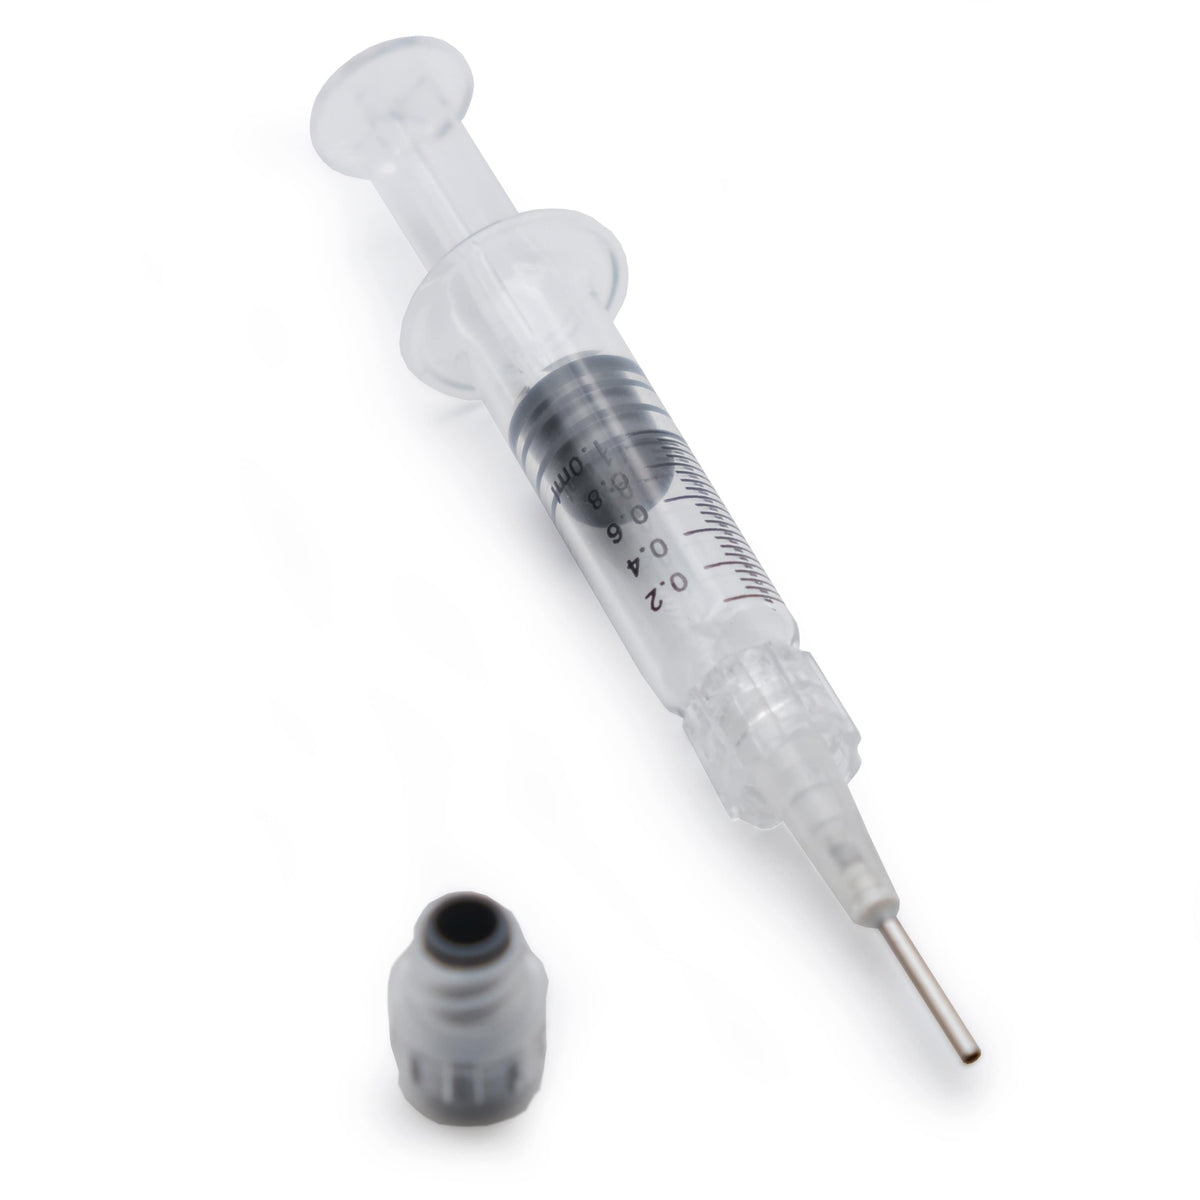 Clamshell Blister Packaging for 1ml Syringe – Brand King